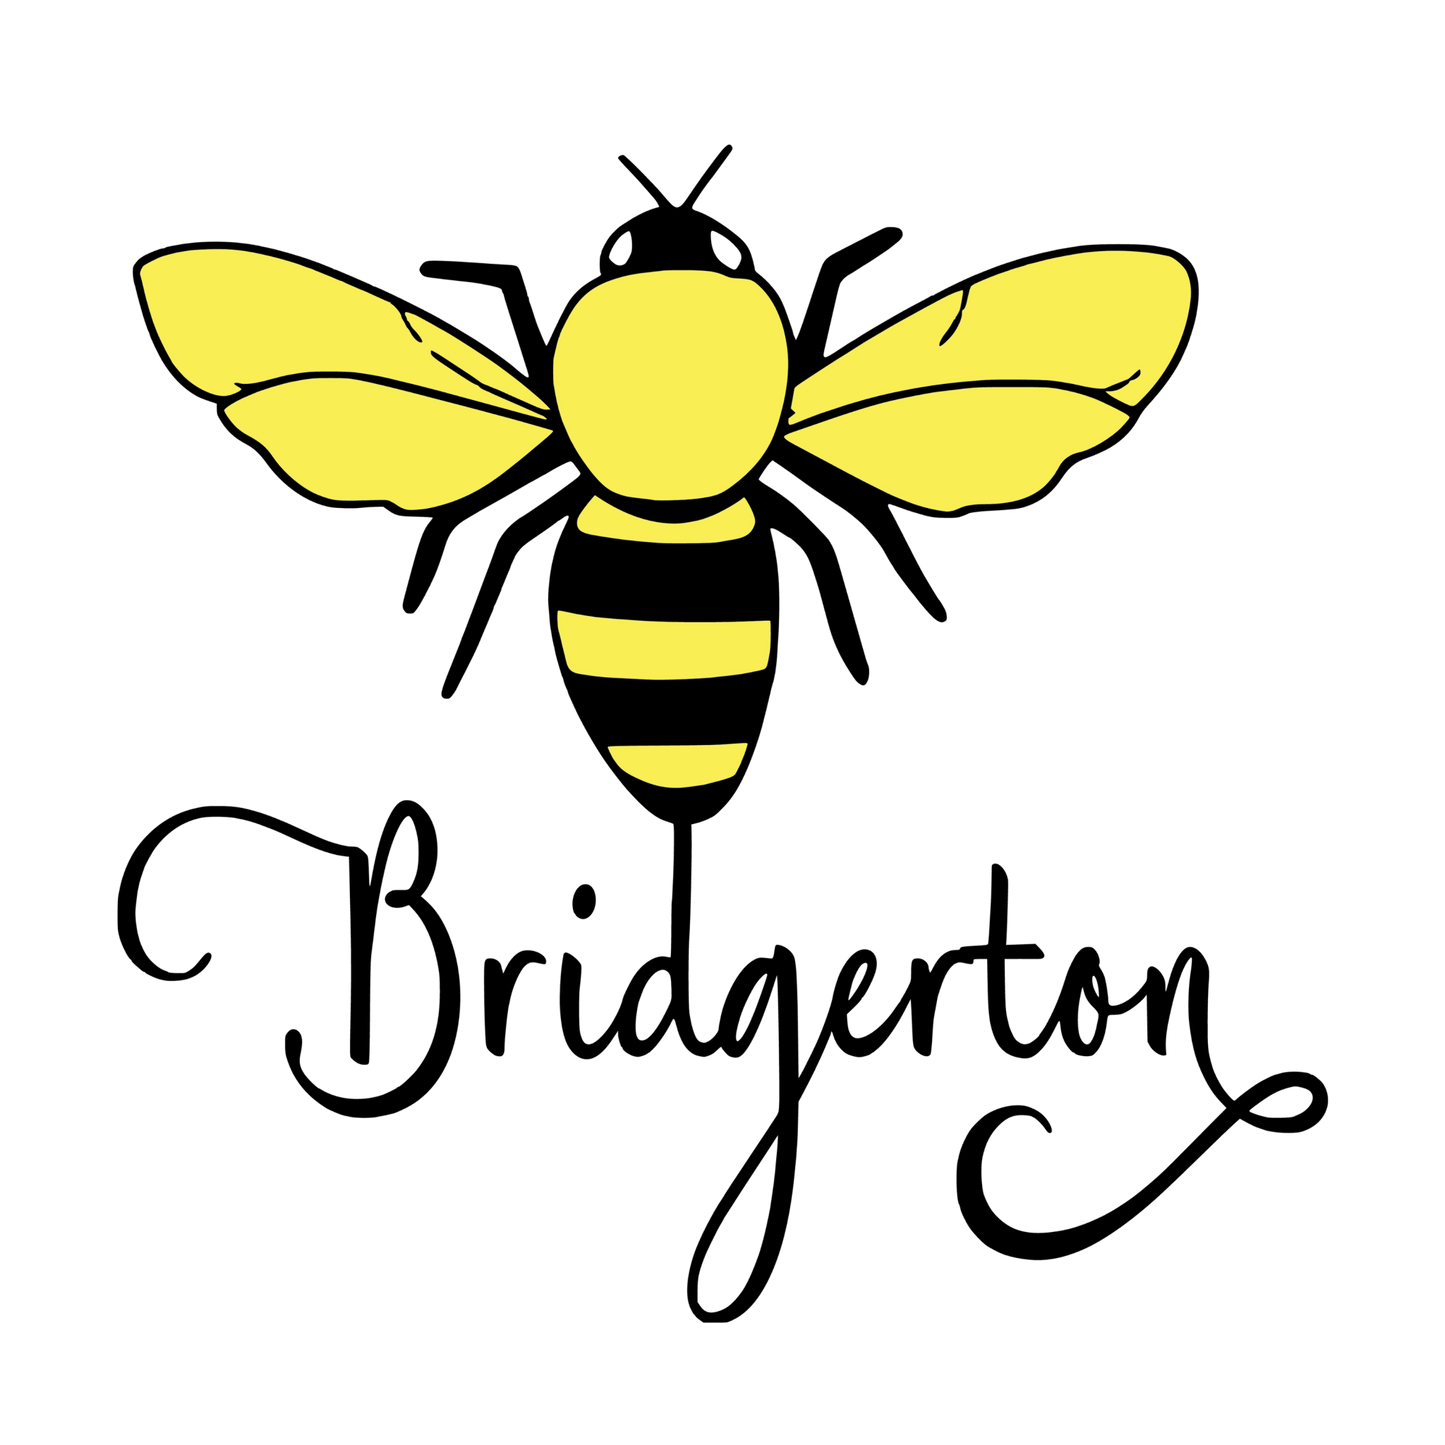 Bridgerton - Bee - Wow Wraps